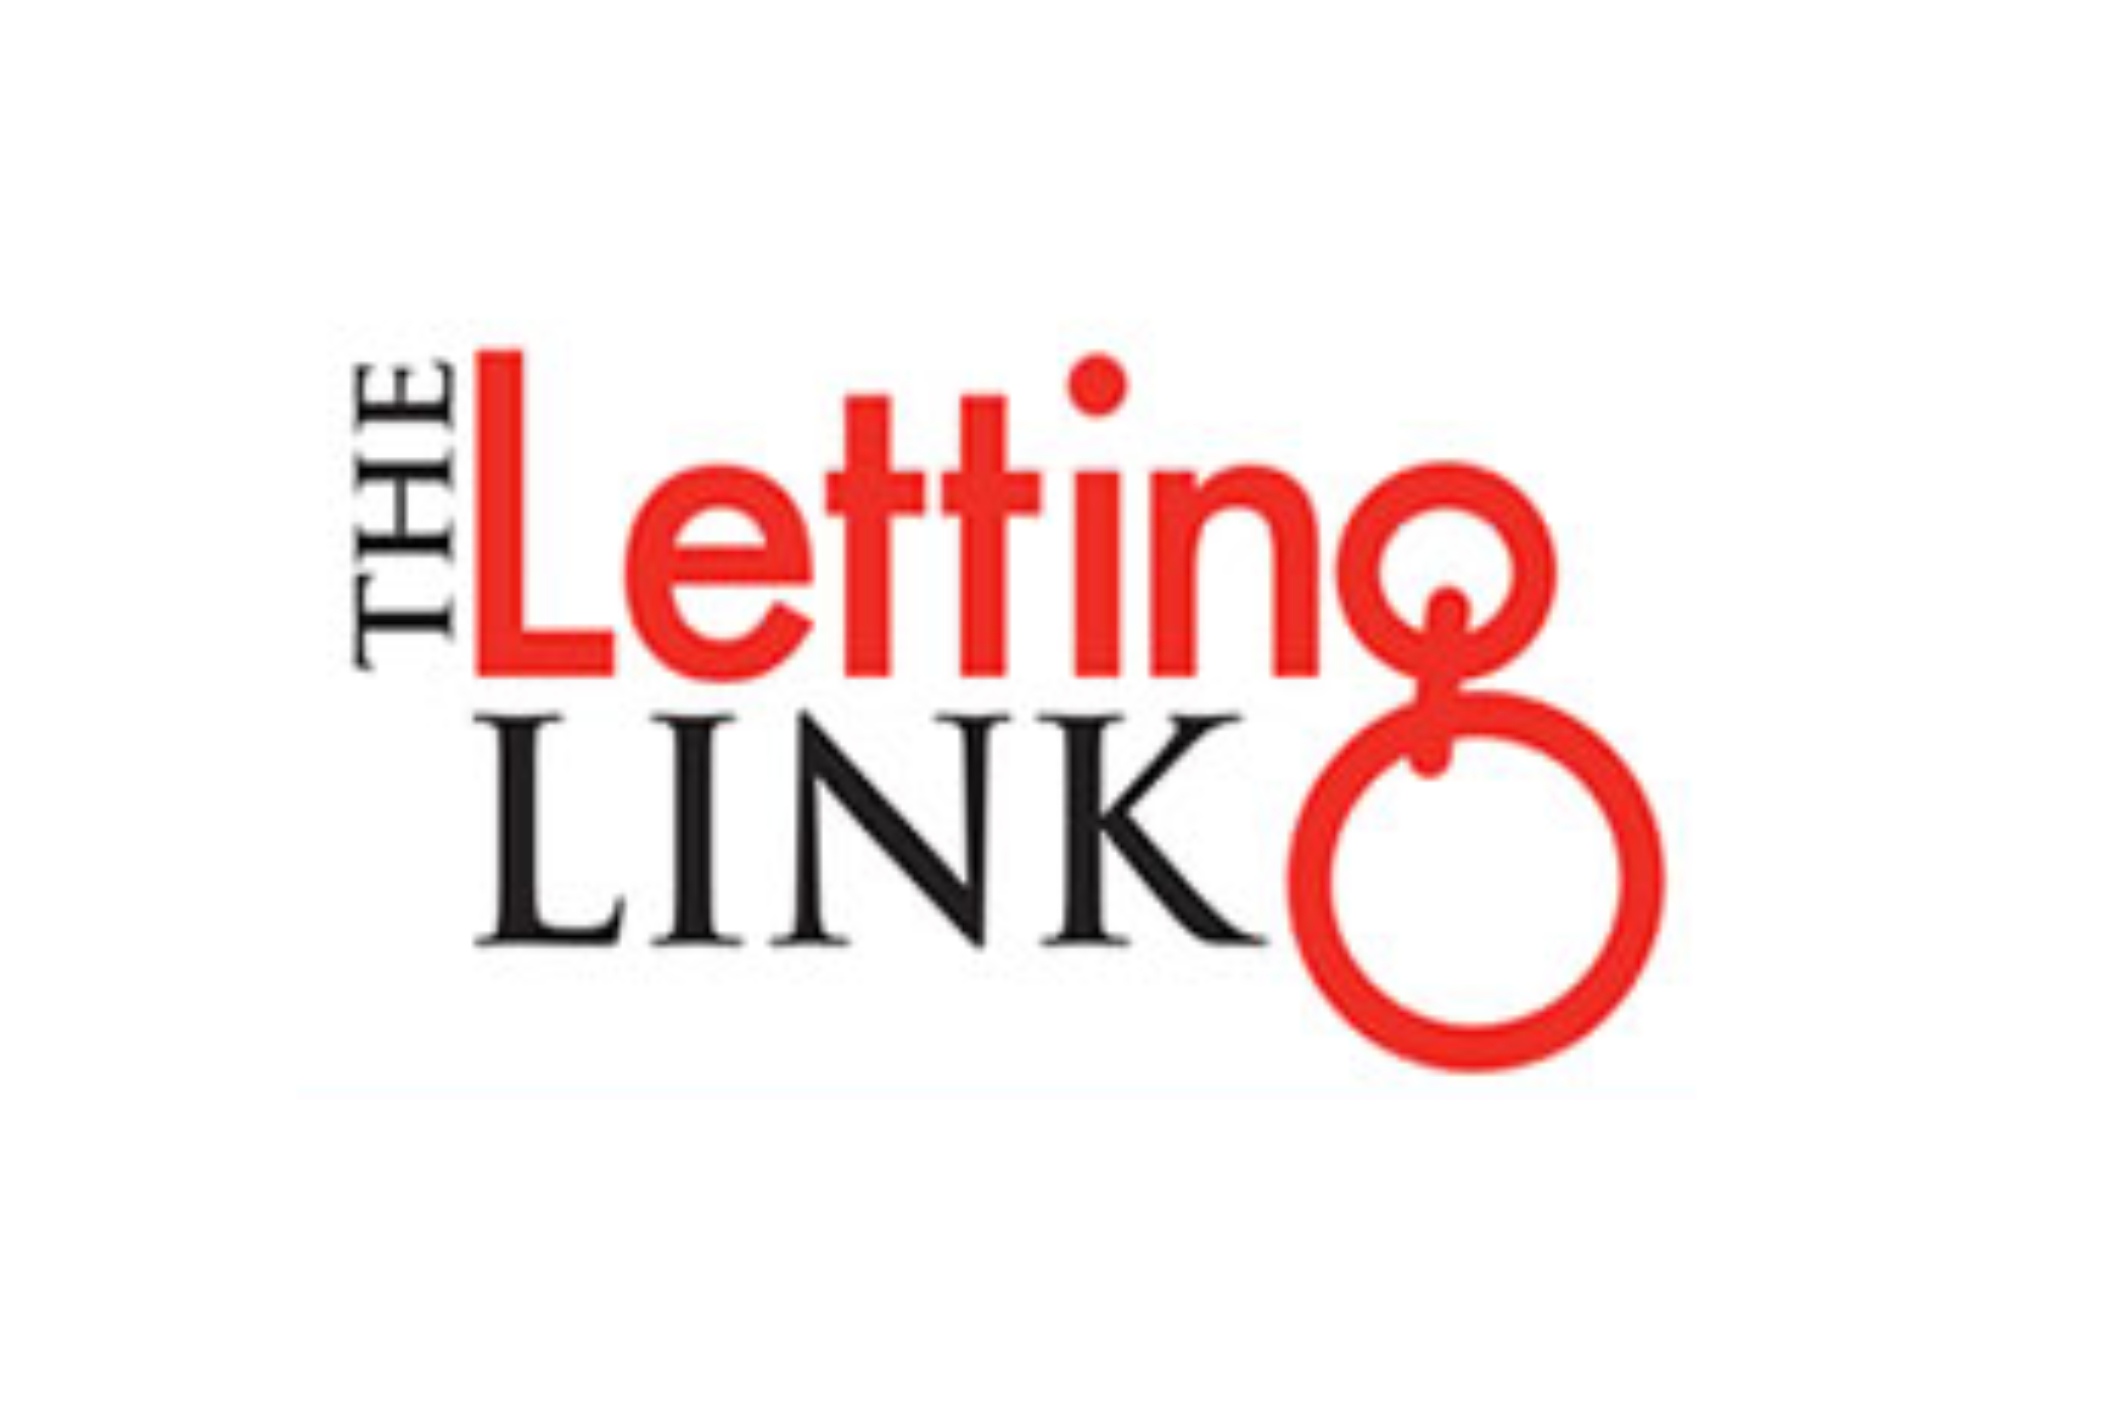 (c) Lettinglink.co.uk